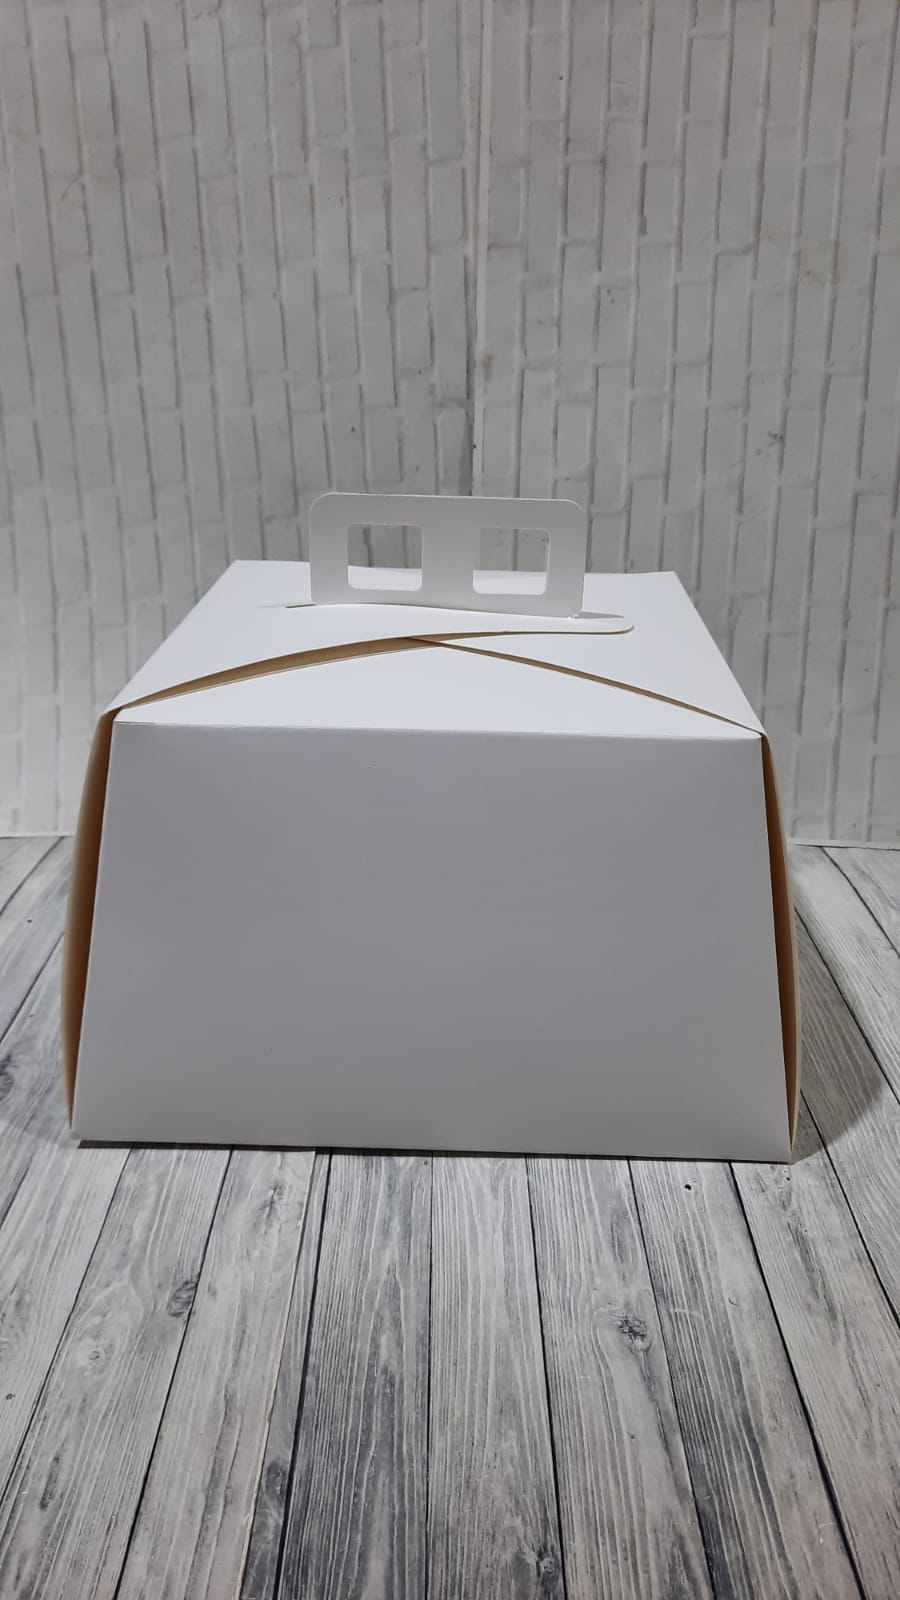 caja maletin torta confiteria 1